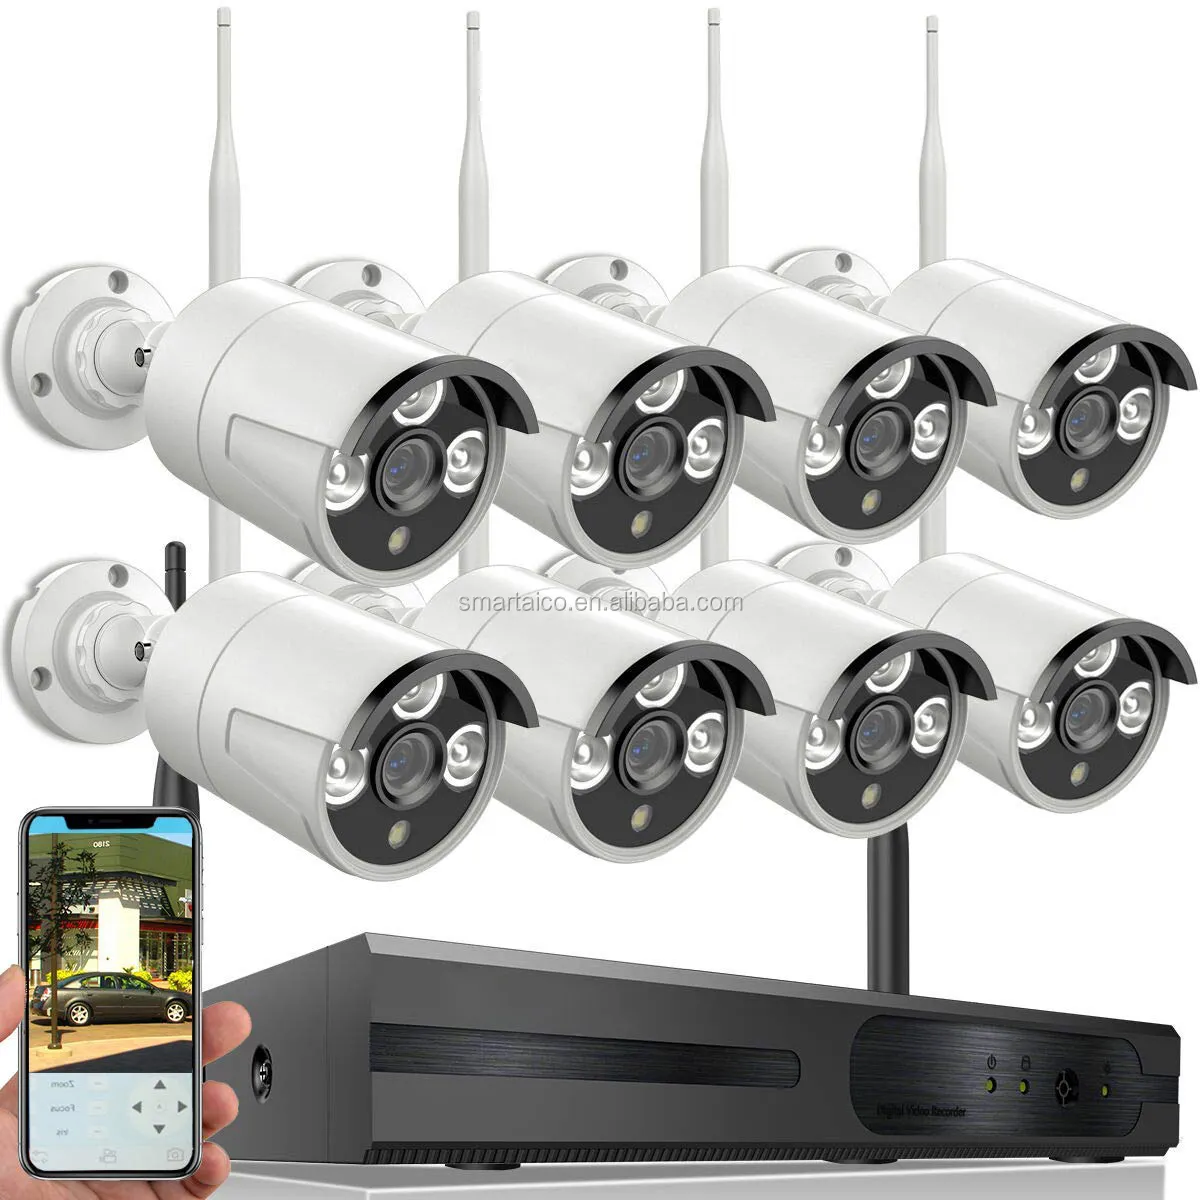 Лидер продаж, 8-канальная система видеонаблюдения AIPOTEC, беспроводная Wi-Fi IP-камера H.265 1080p, все в одном, комплект сетевого видеорегистратора